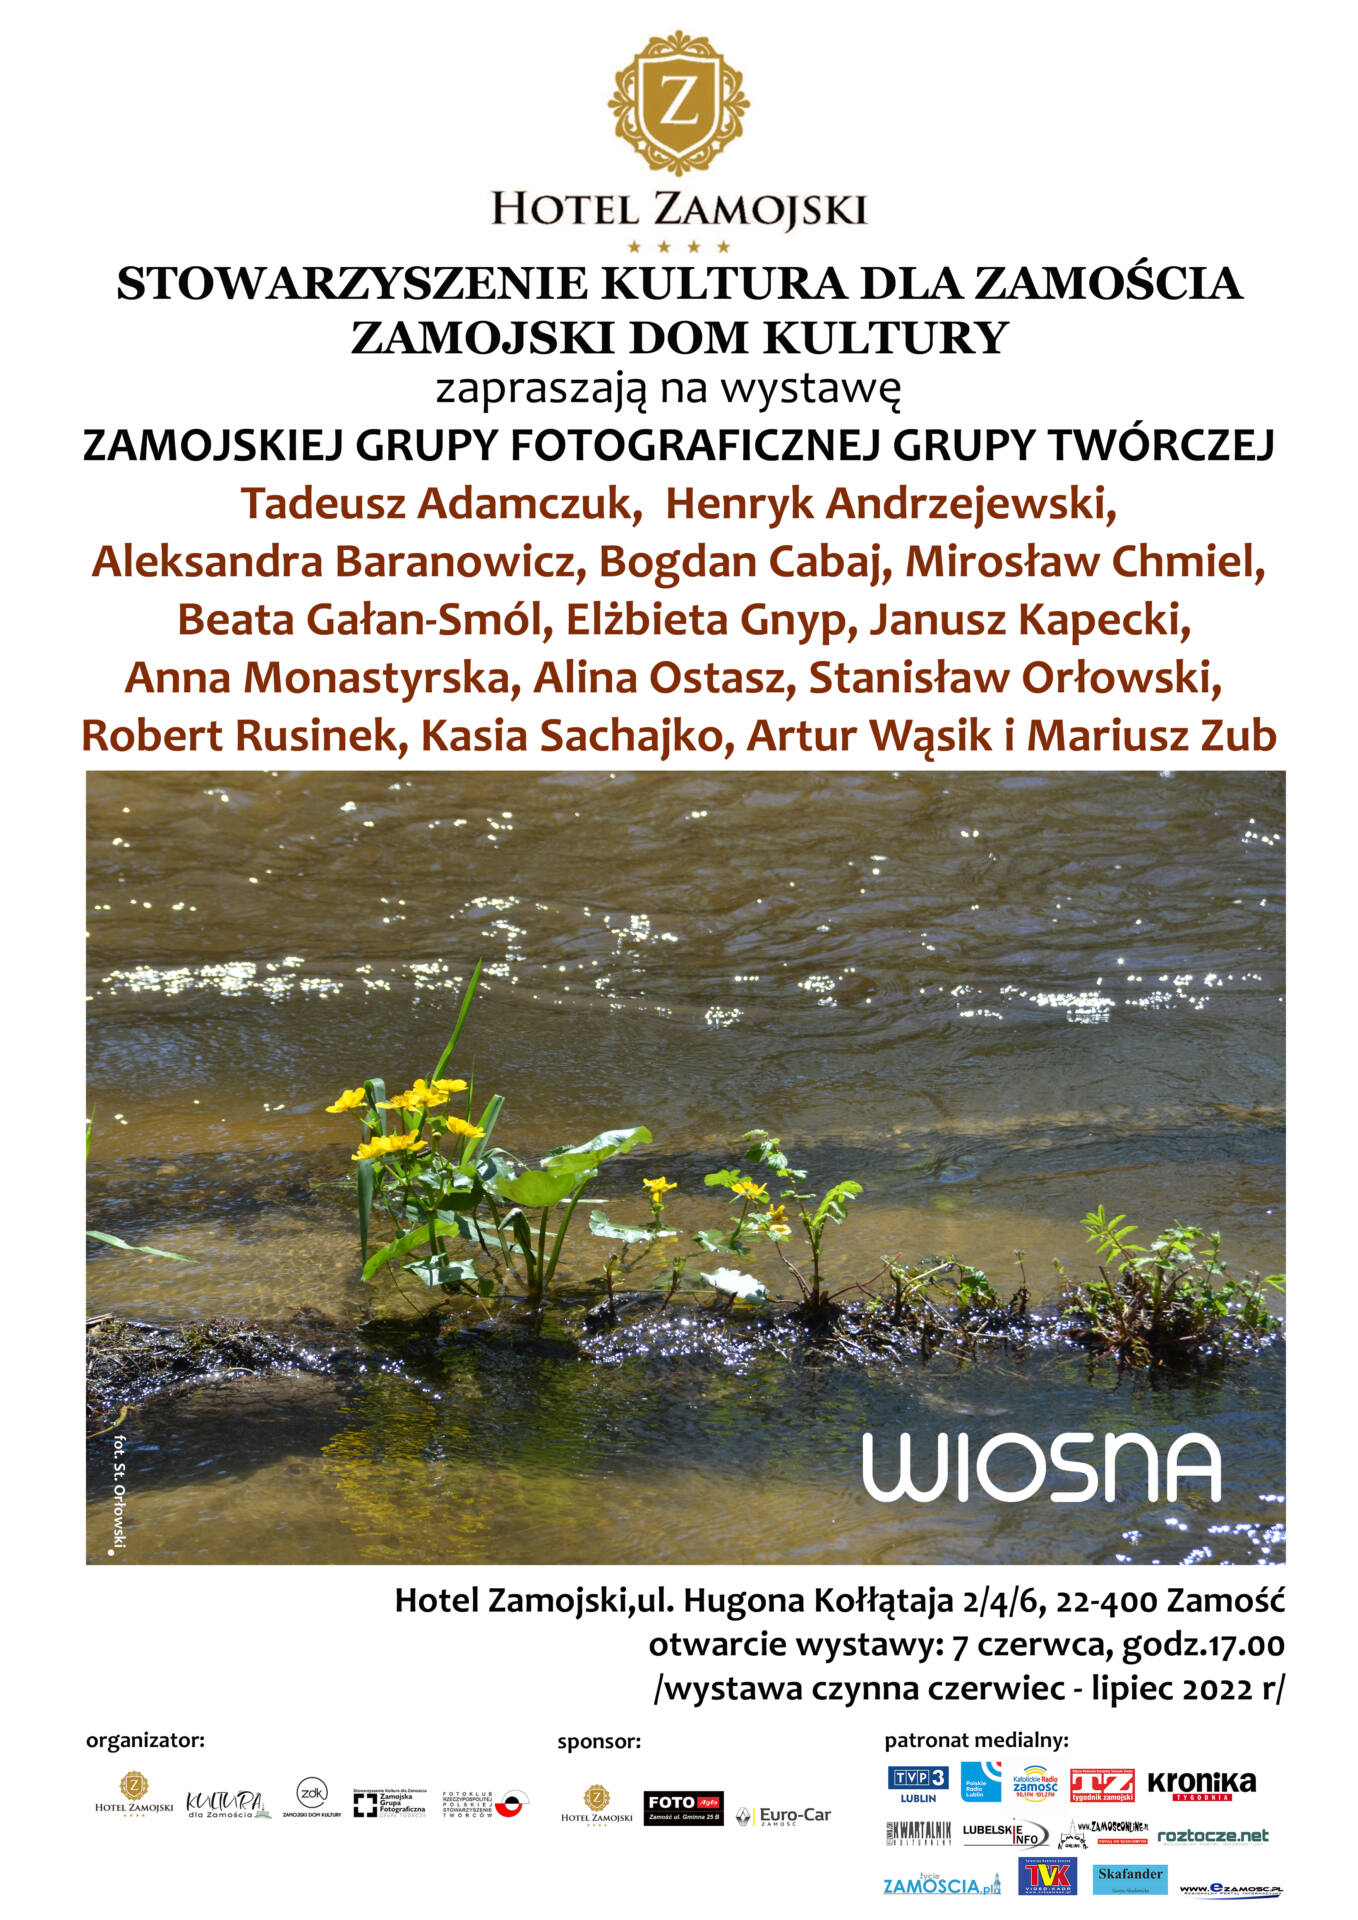 wiosna „WIOSNA” – wystawa zbiorowa Zamojskiej Grupy Fotograficznej – Grupy Twórczej.